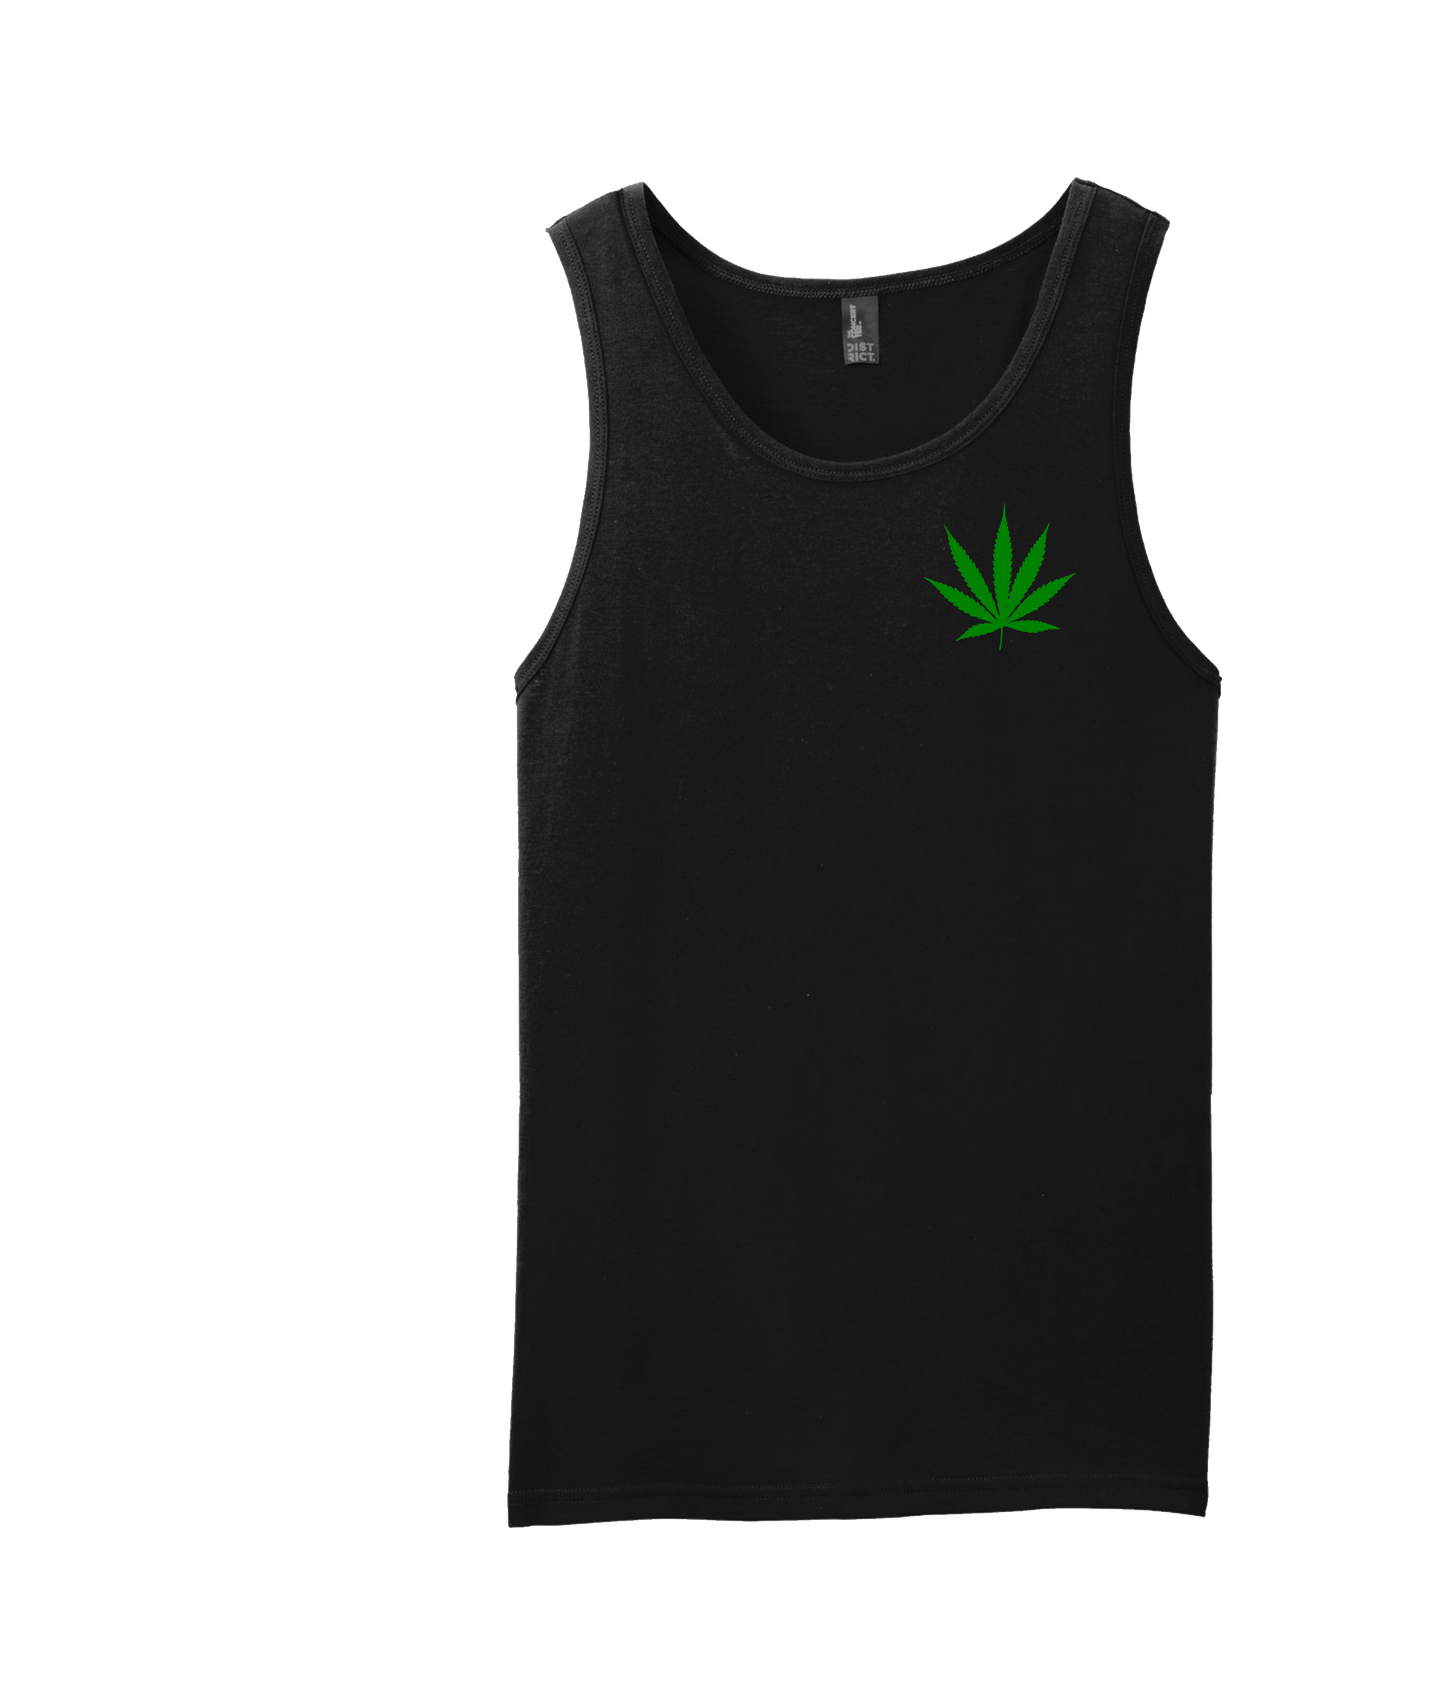 4evaGood - Cannabis Leaf - Black Tank Top